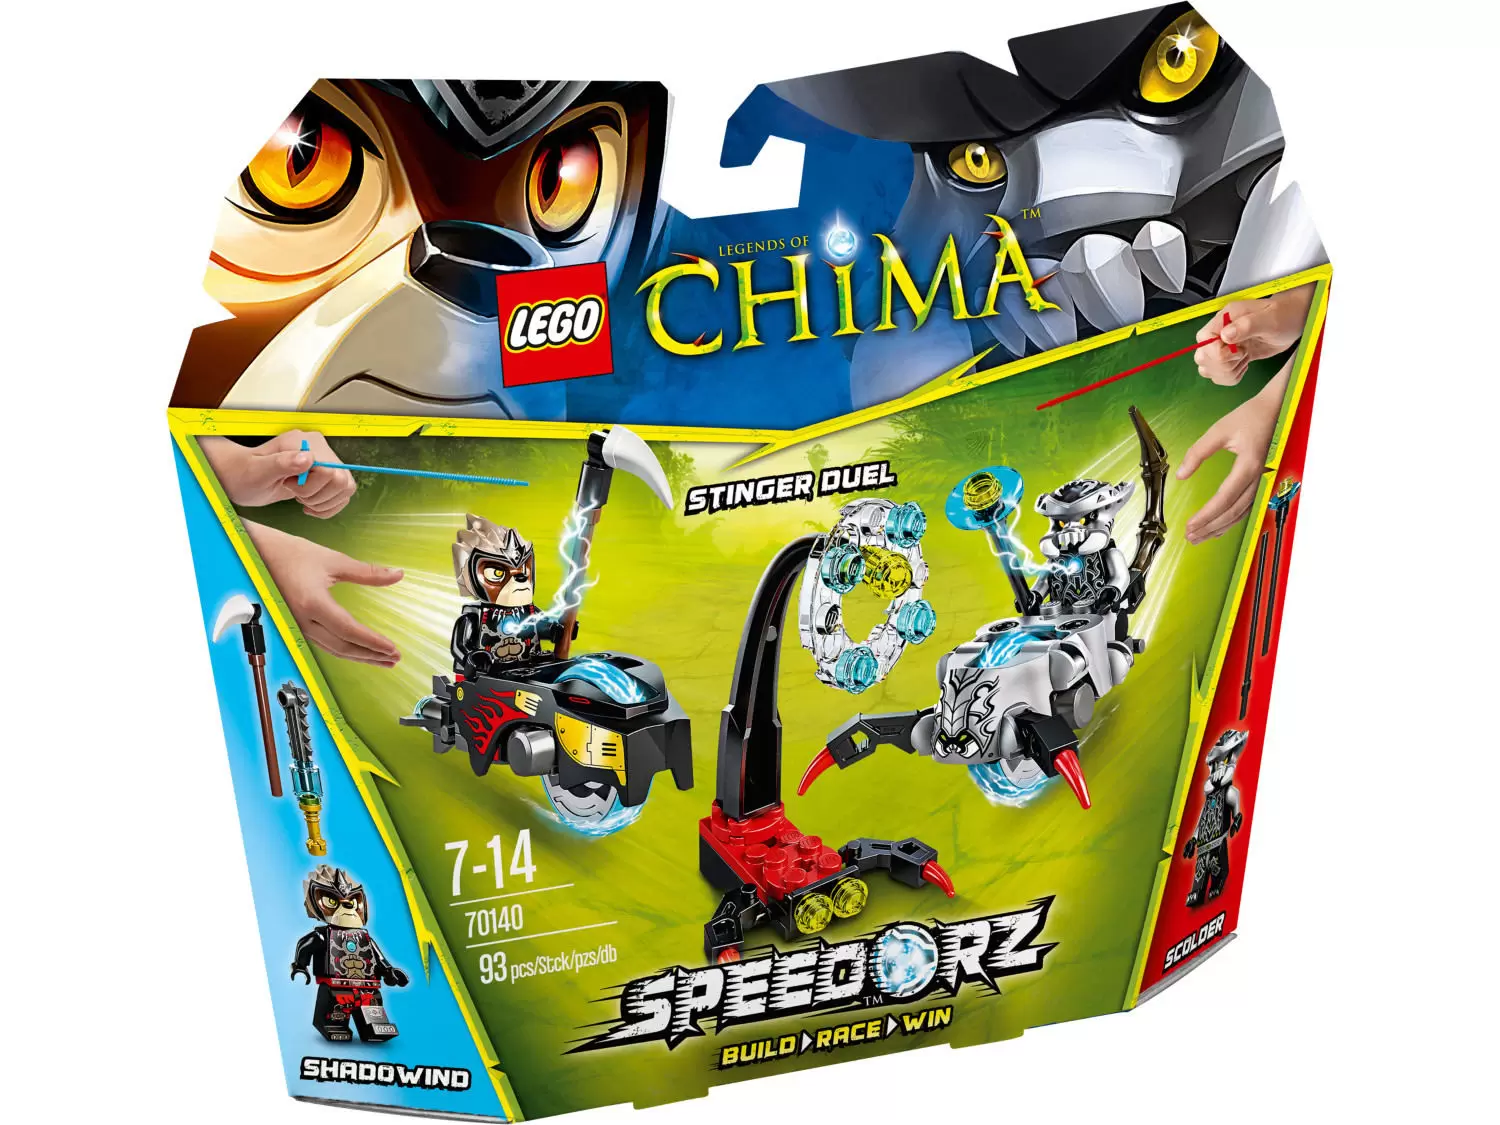 LEGO Legends of Chima - Stinger Duel